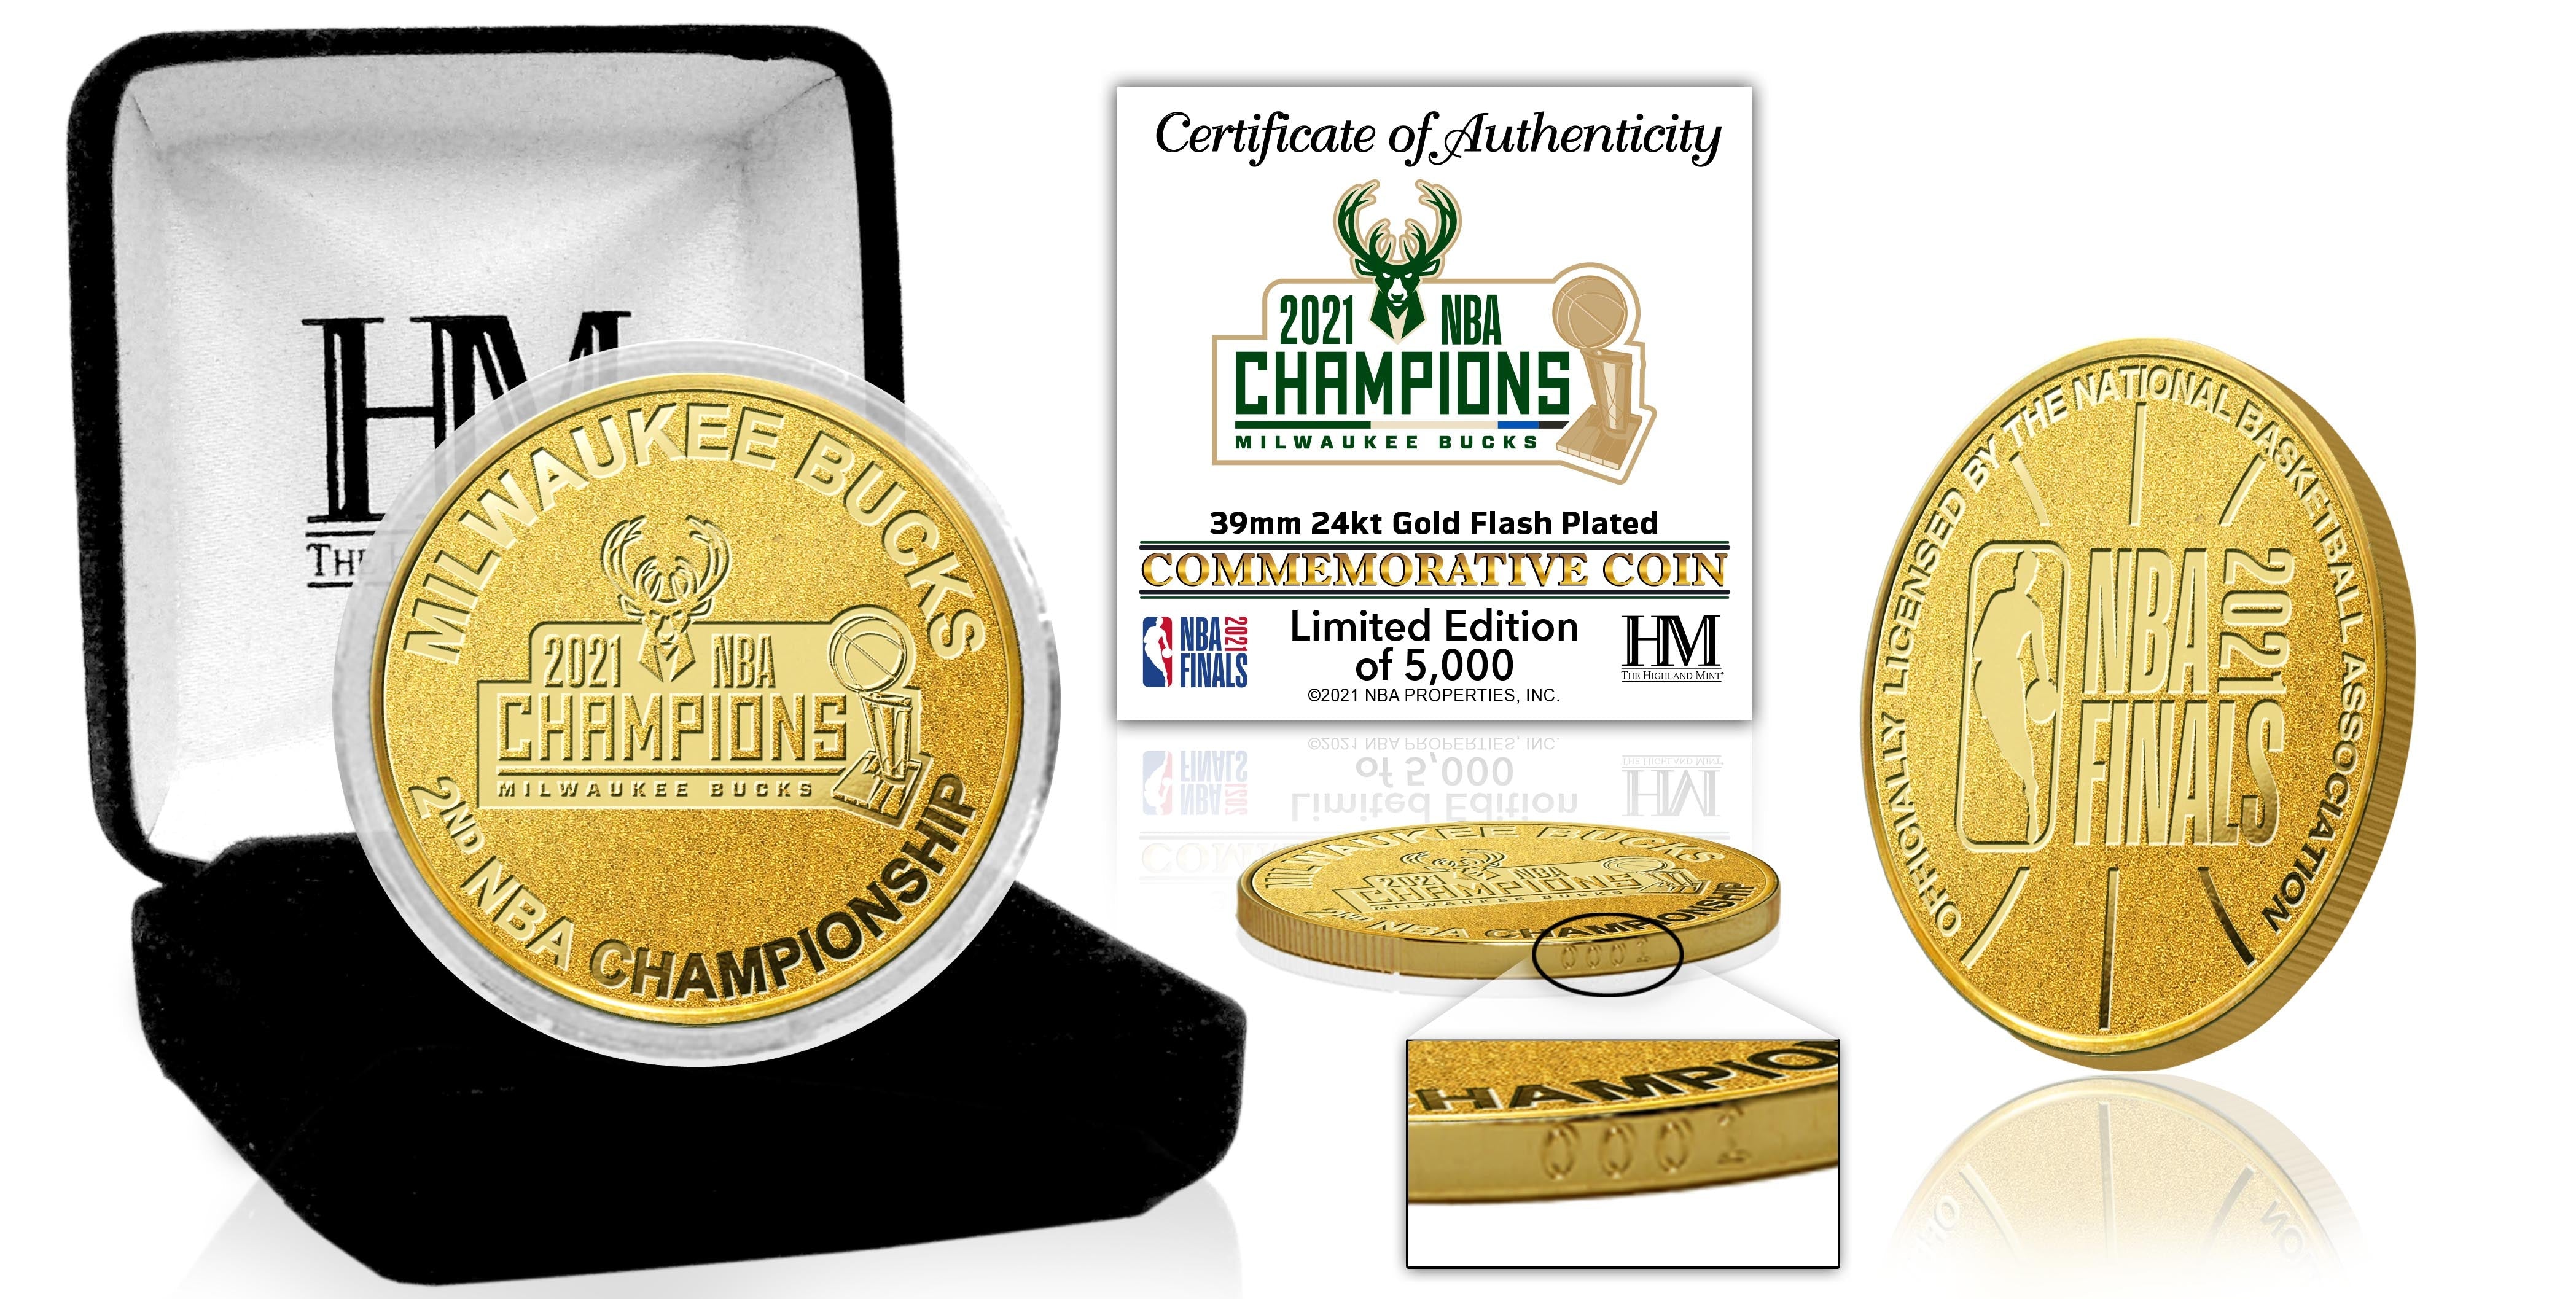 Milwaukee Bucks 2021 NBA Finals Champions Gold Mint Coin